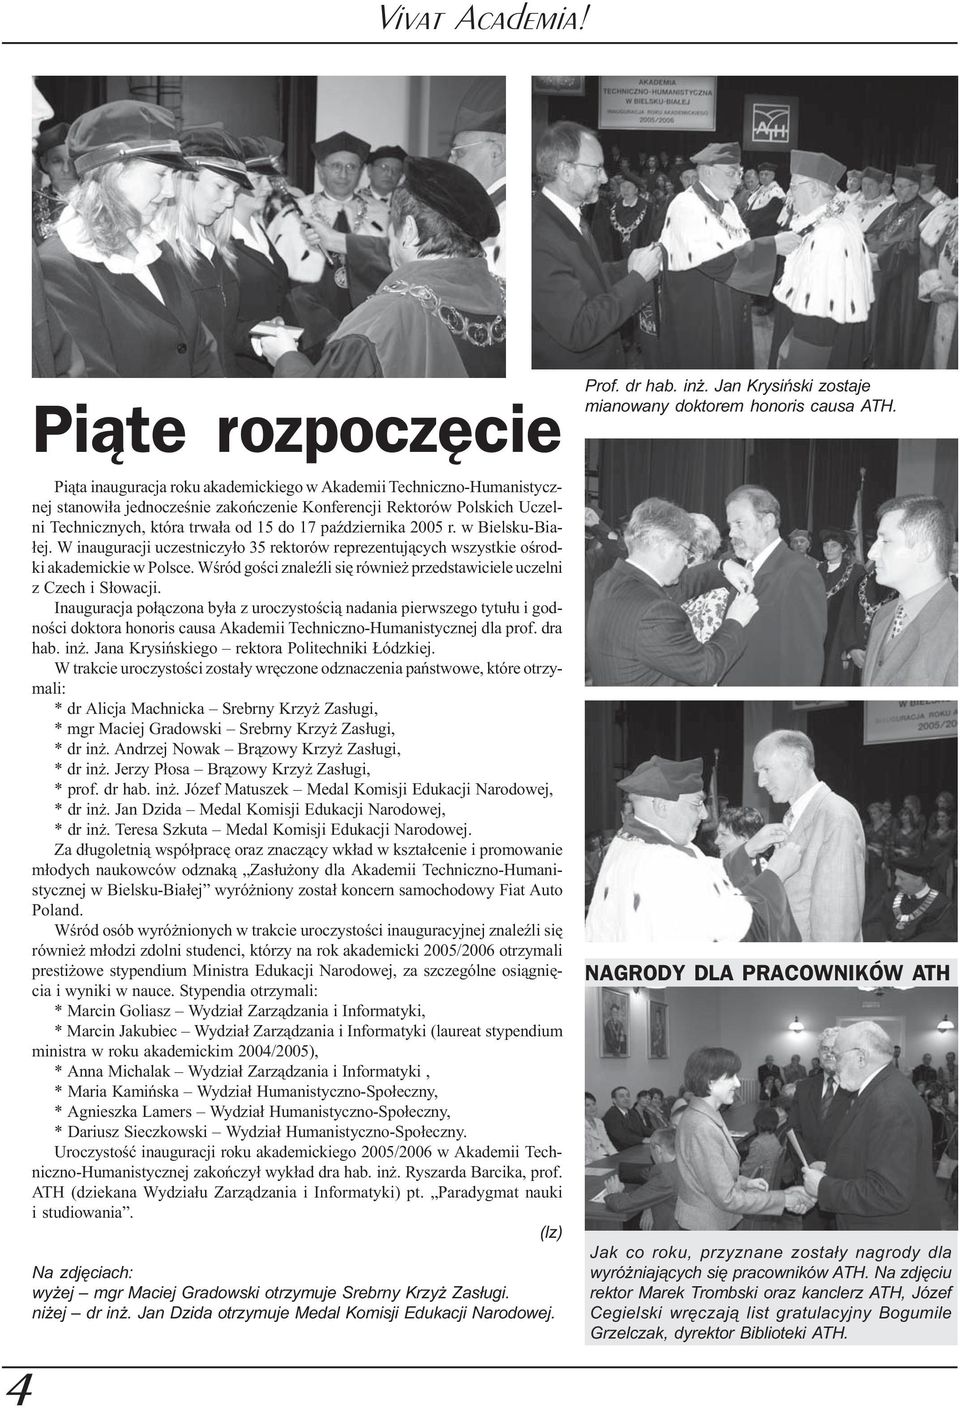 2005 r. w Bielsku-Bia- ³ej. W inauguracji uczestniczy³o 35 rektorów reprezentuj¹cych wszystkie oœrodki akademickie w Polsce. Wœród goœci znaleÿli siê równie przedstawiciele uczelni z Czech i S³owacji.